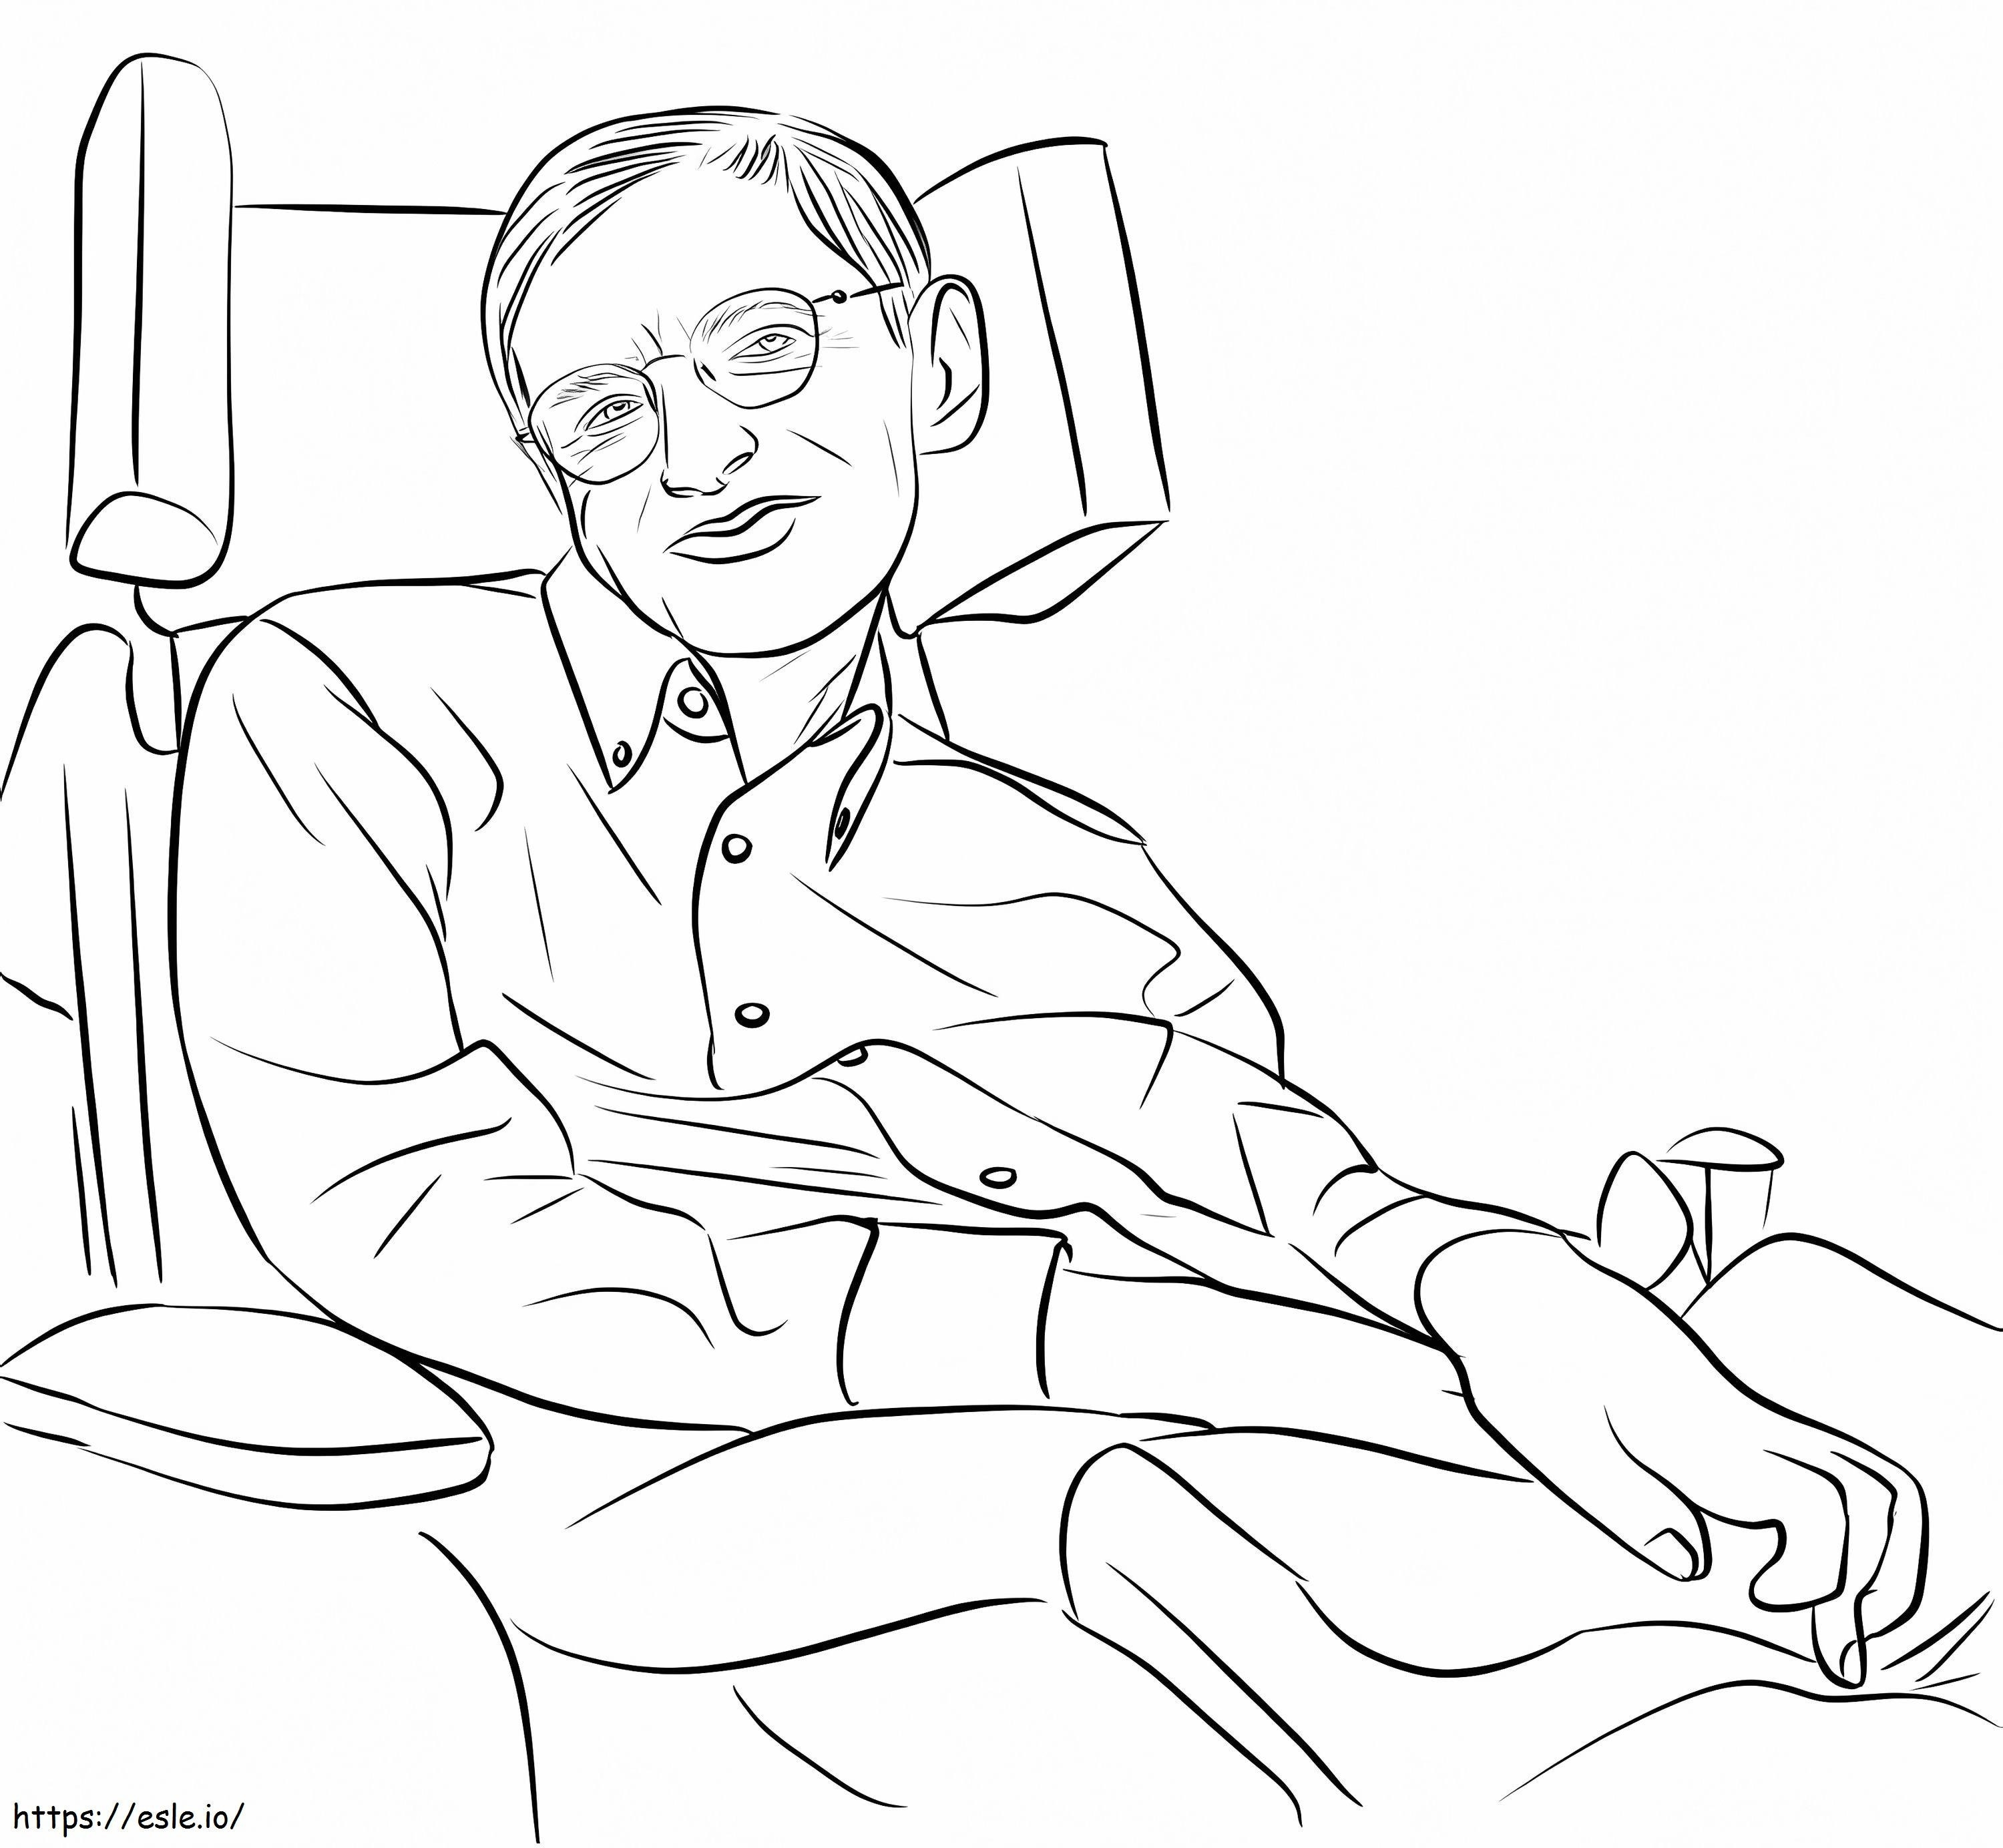 Stephena Hawkinga kolorowanka